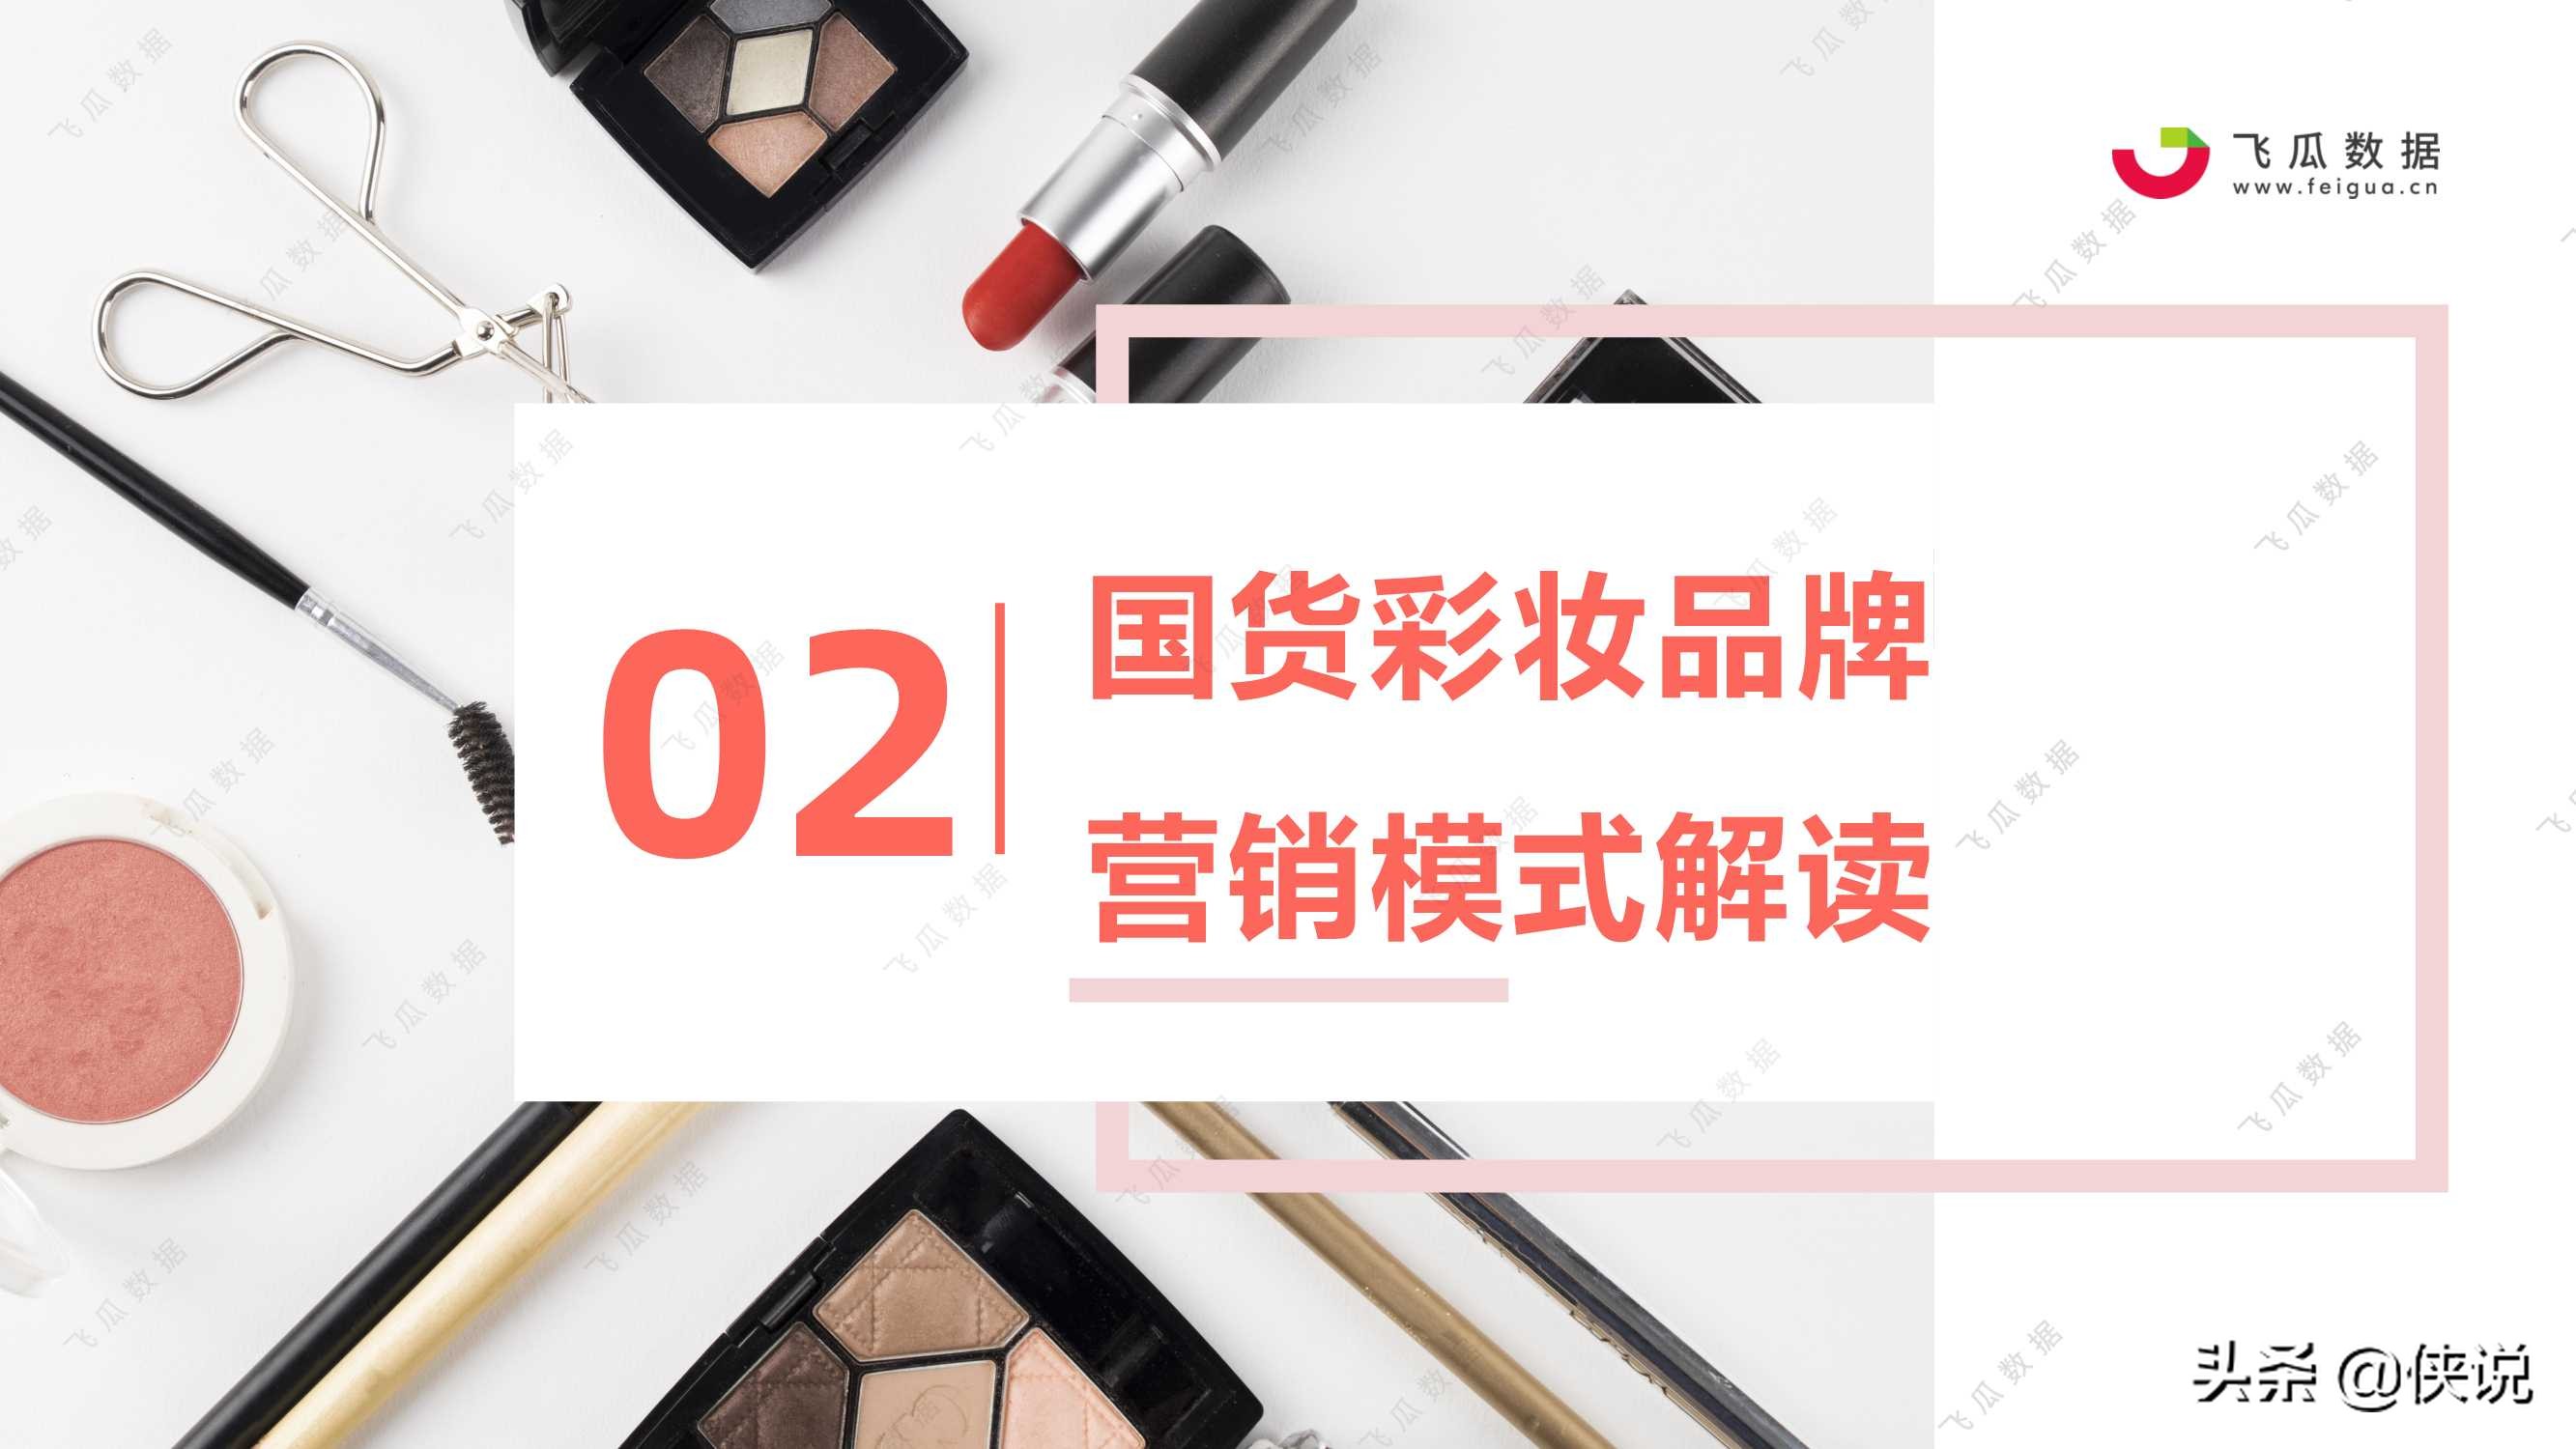 2021年国货彩妆品牌推广营销趋势（飞瓜数据）